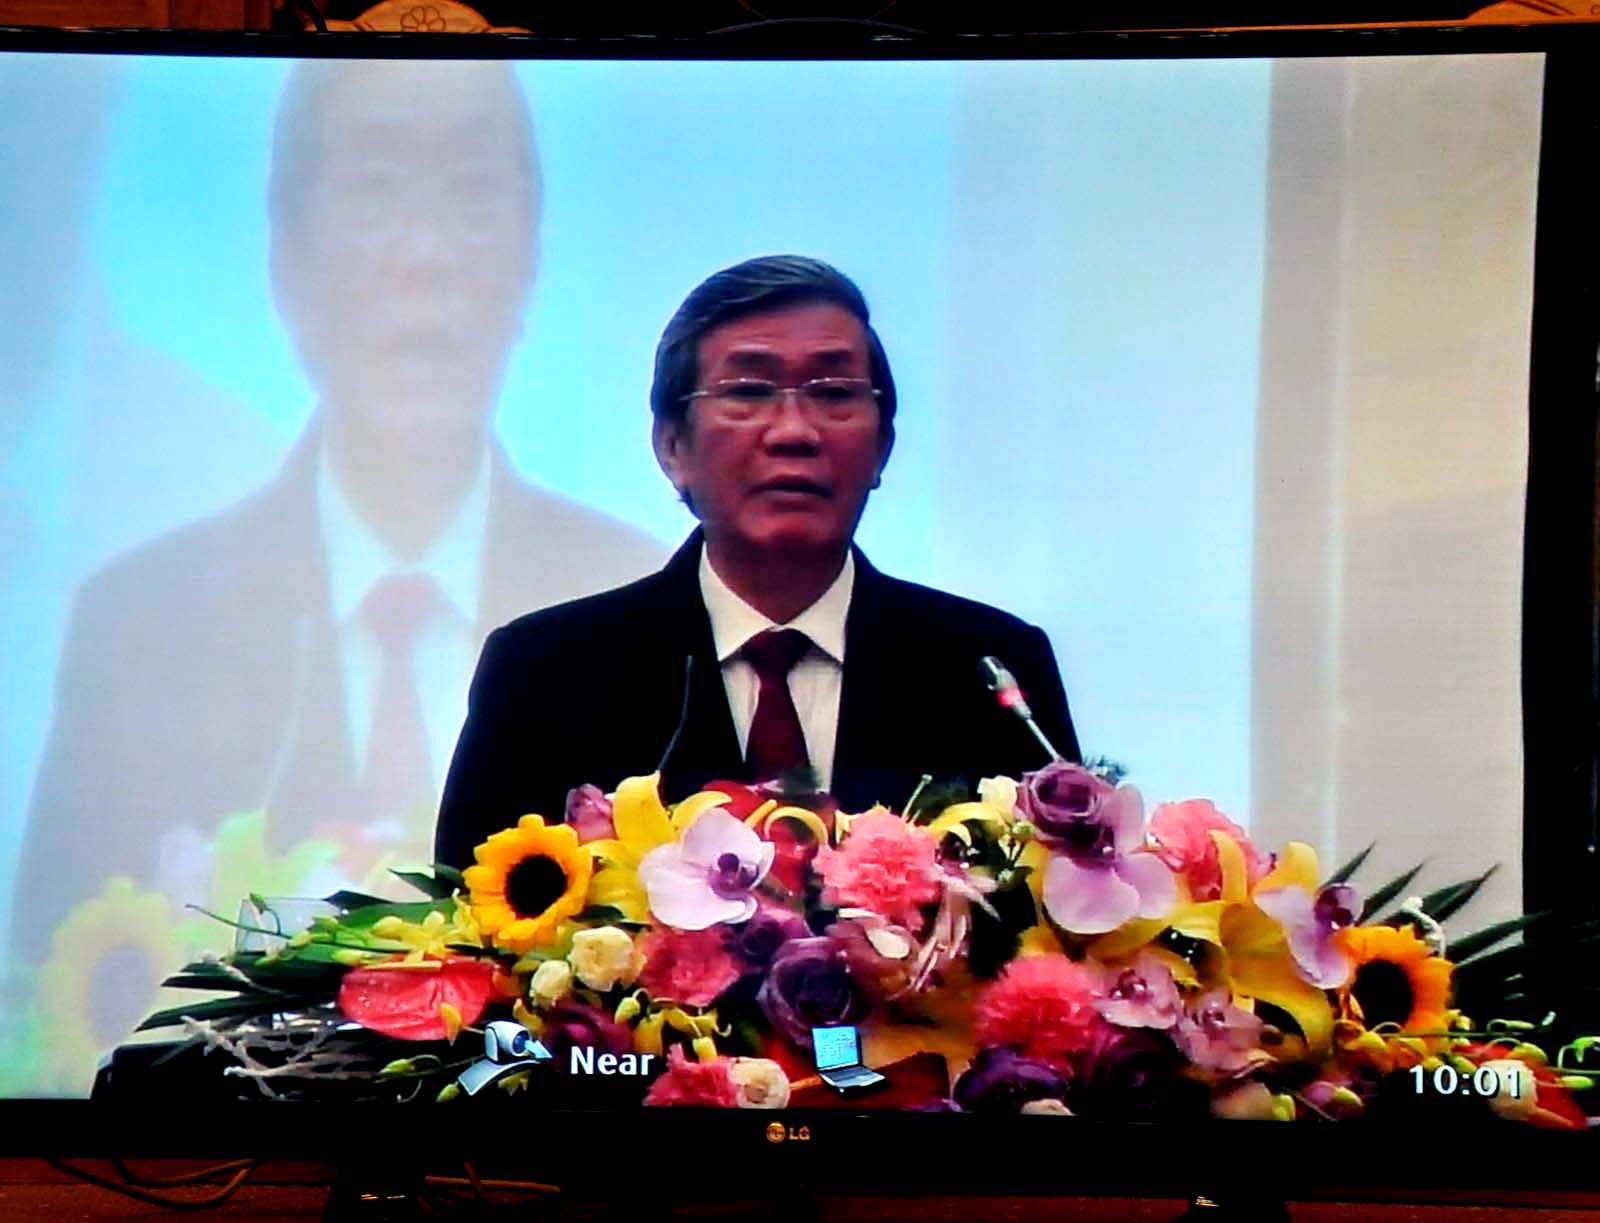 Đồng chí Đinh Thế Huy, Uỷ viên Bộ Chính trị, Thường trực Ban Bí thư Trung ương Đảng phát biểu chỉ đạo tại hội nghị điểm cầu trung tâm